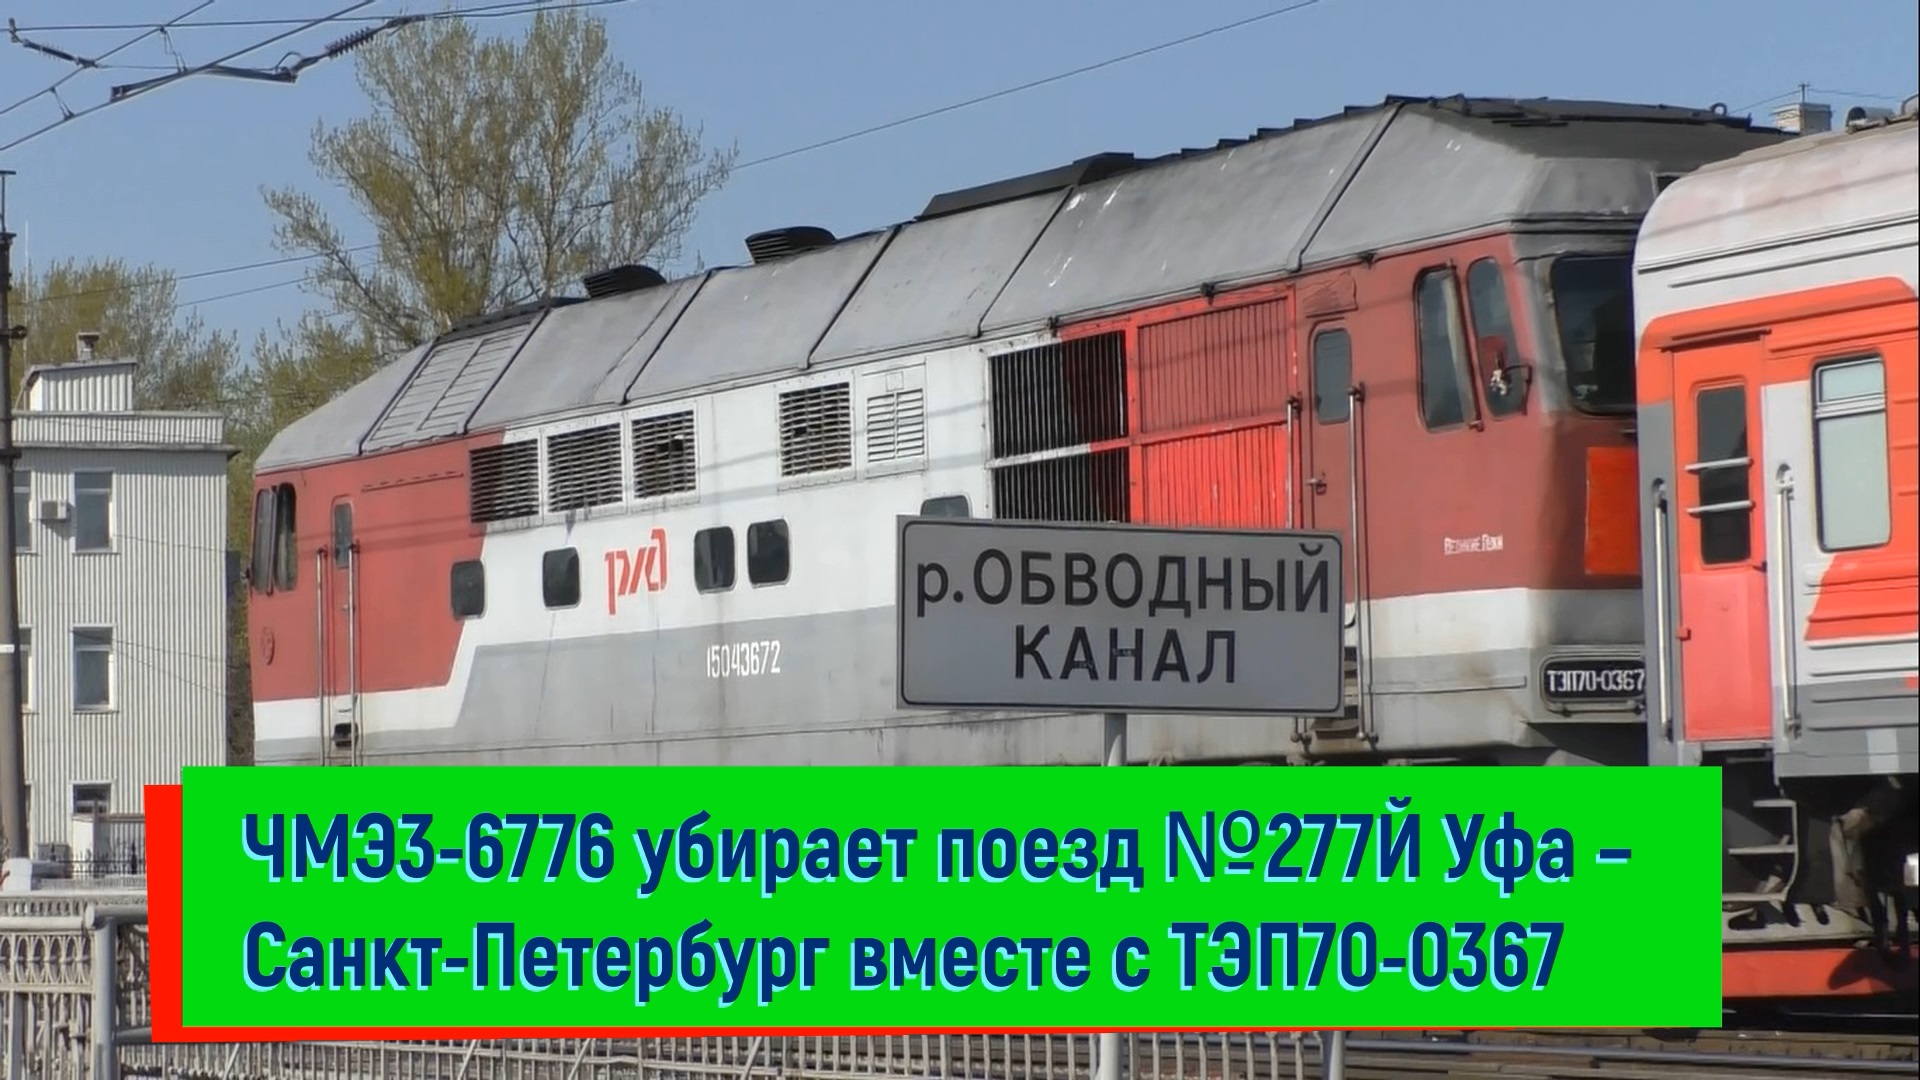 Маневровый тепловоз ЧМЭ3э-6776 убирает поезд №277Й Уфа – Санкт-Петербург вместе с ТЭП70-0367